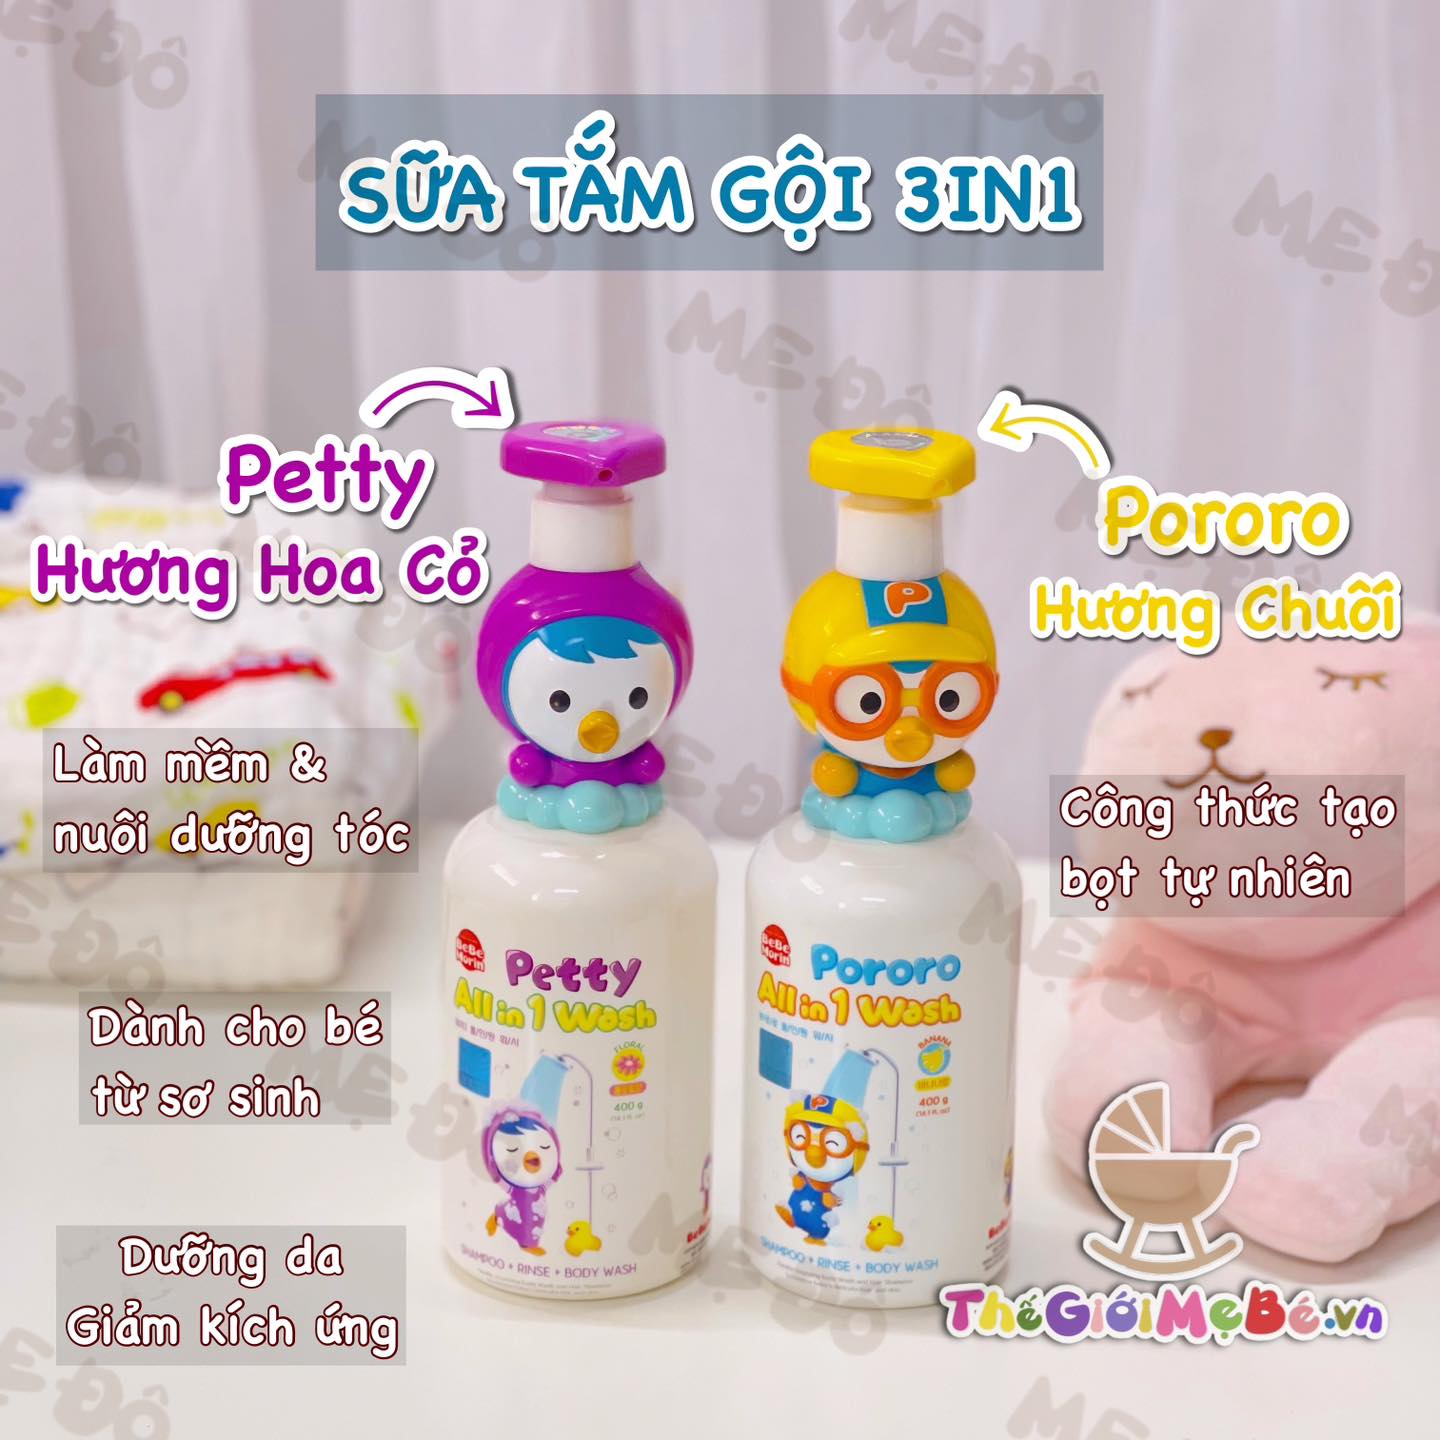 Sữa tắm gội 3 trong 1 Pororo & Petty Hàn Quốc dành riêng cho bé sơ sinh